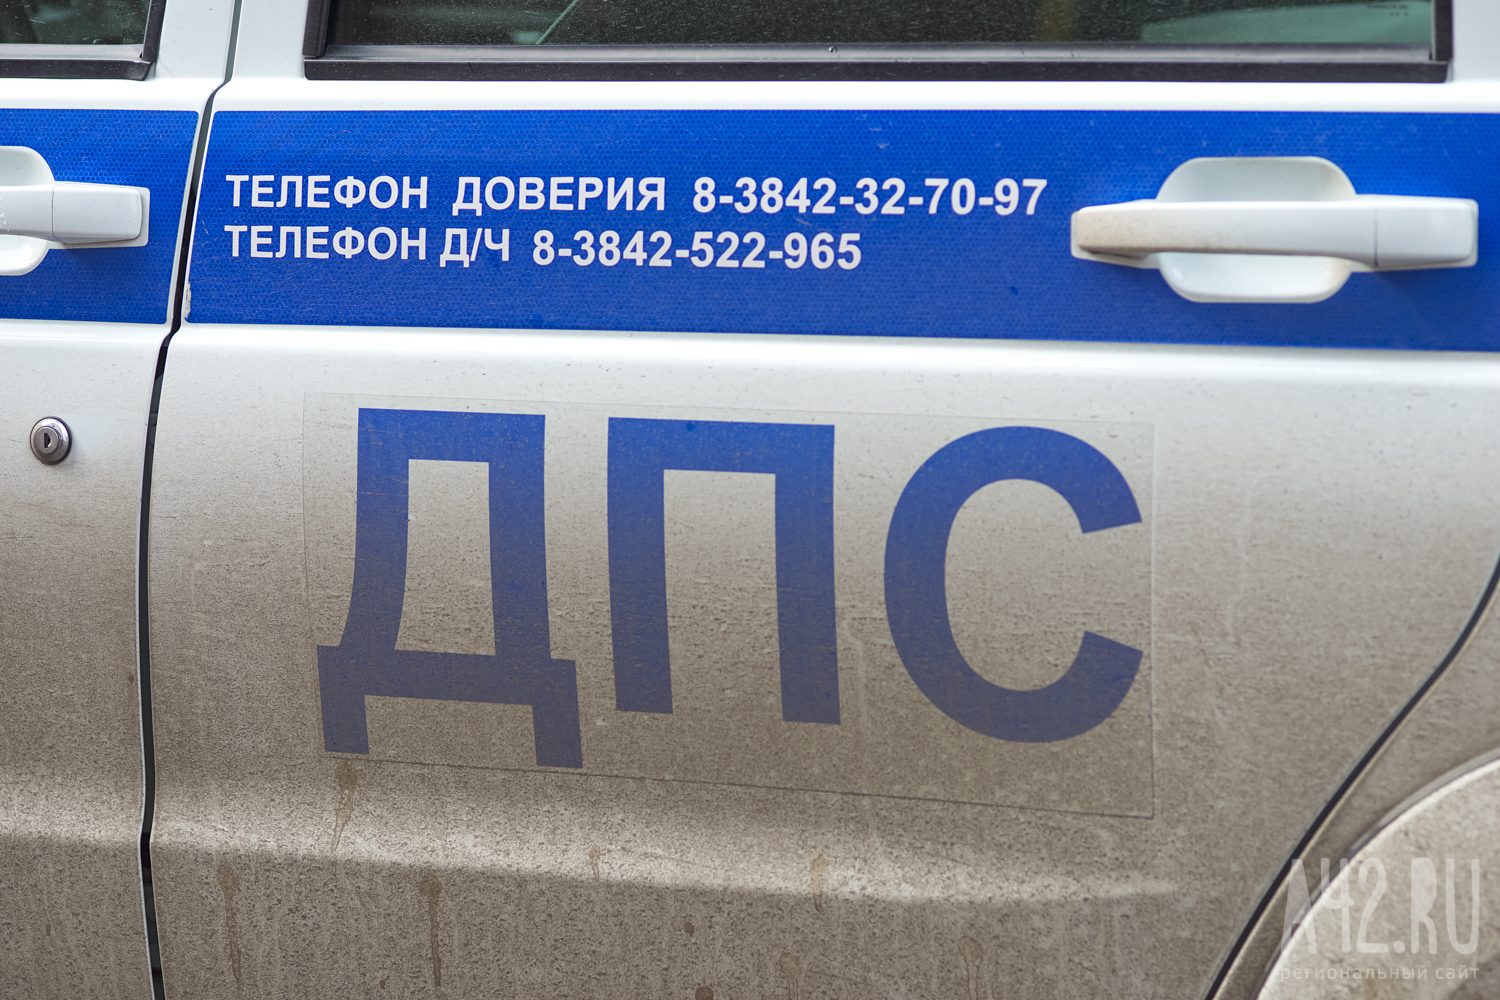 В ГИБДД сообщили подробности аварии с перевернувшейся машиной в Кузбассе